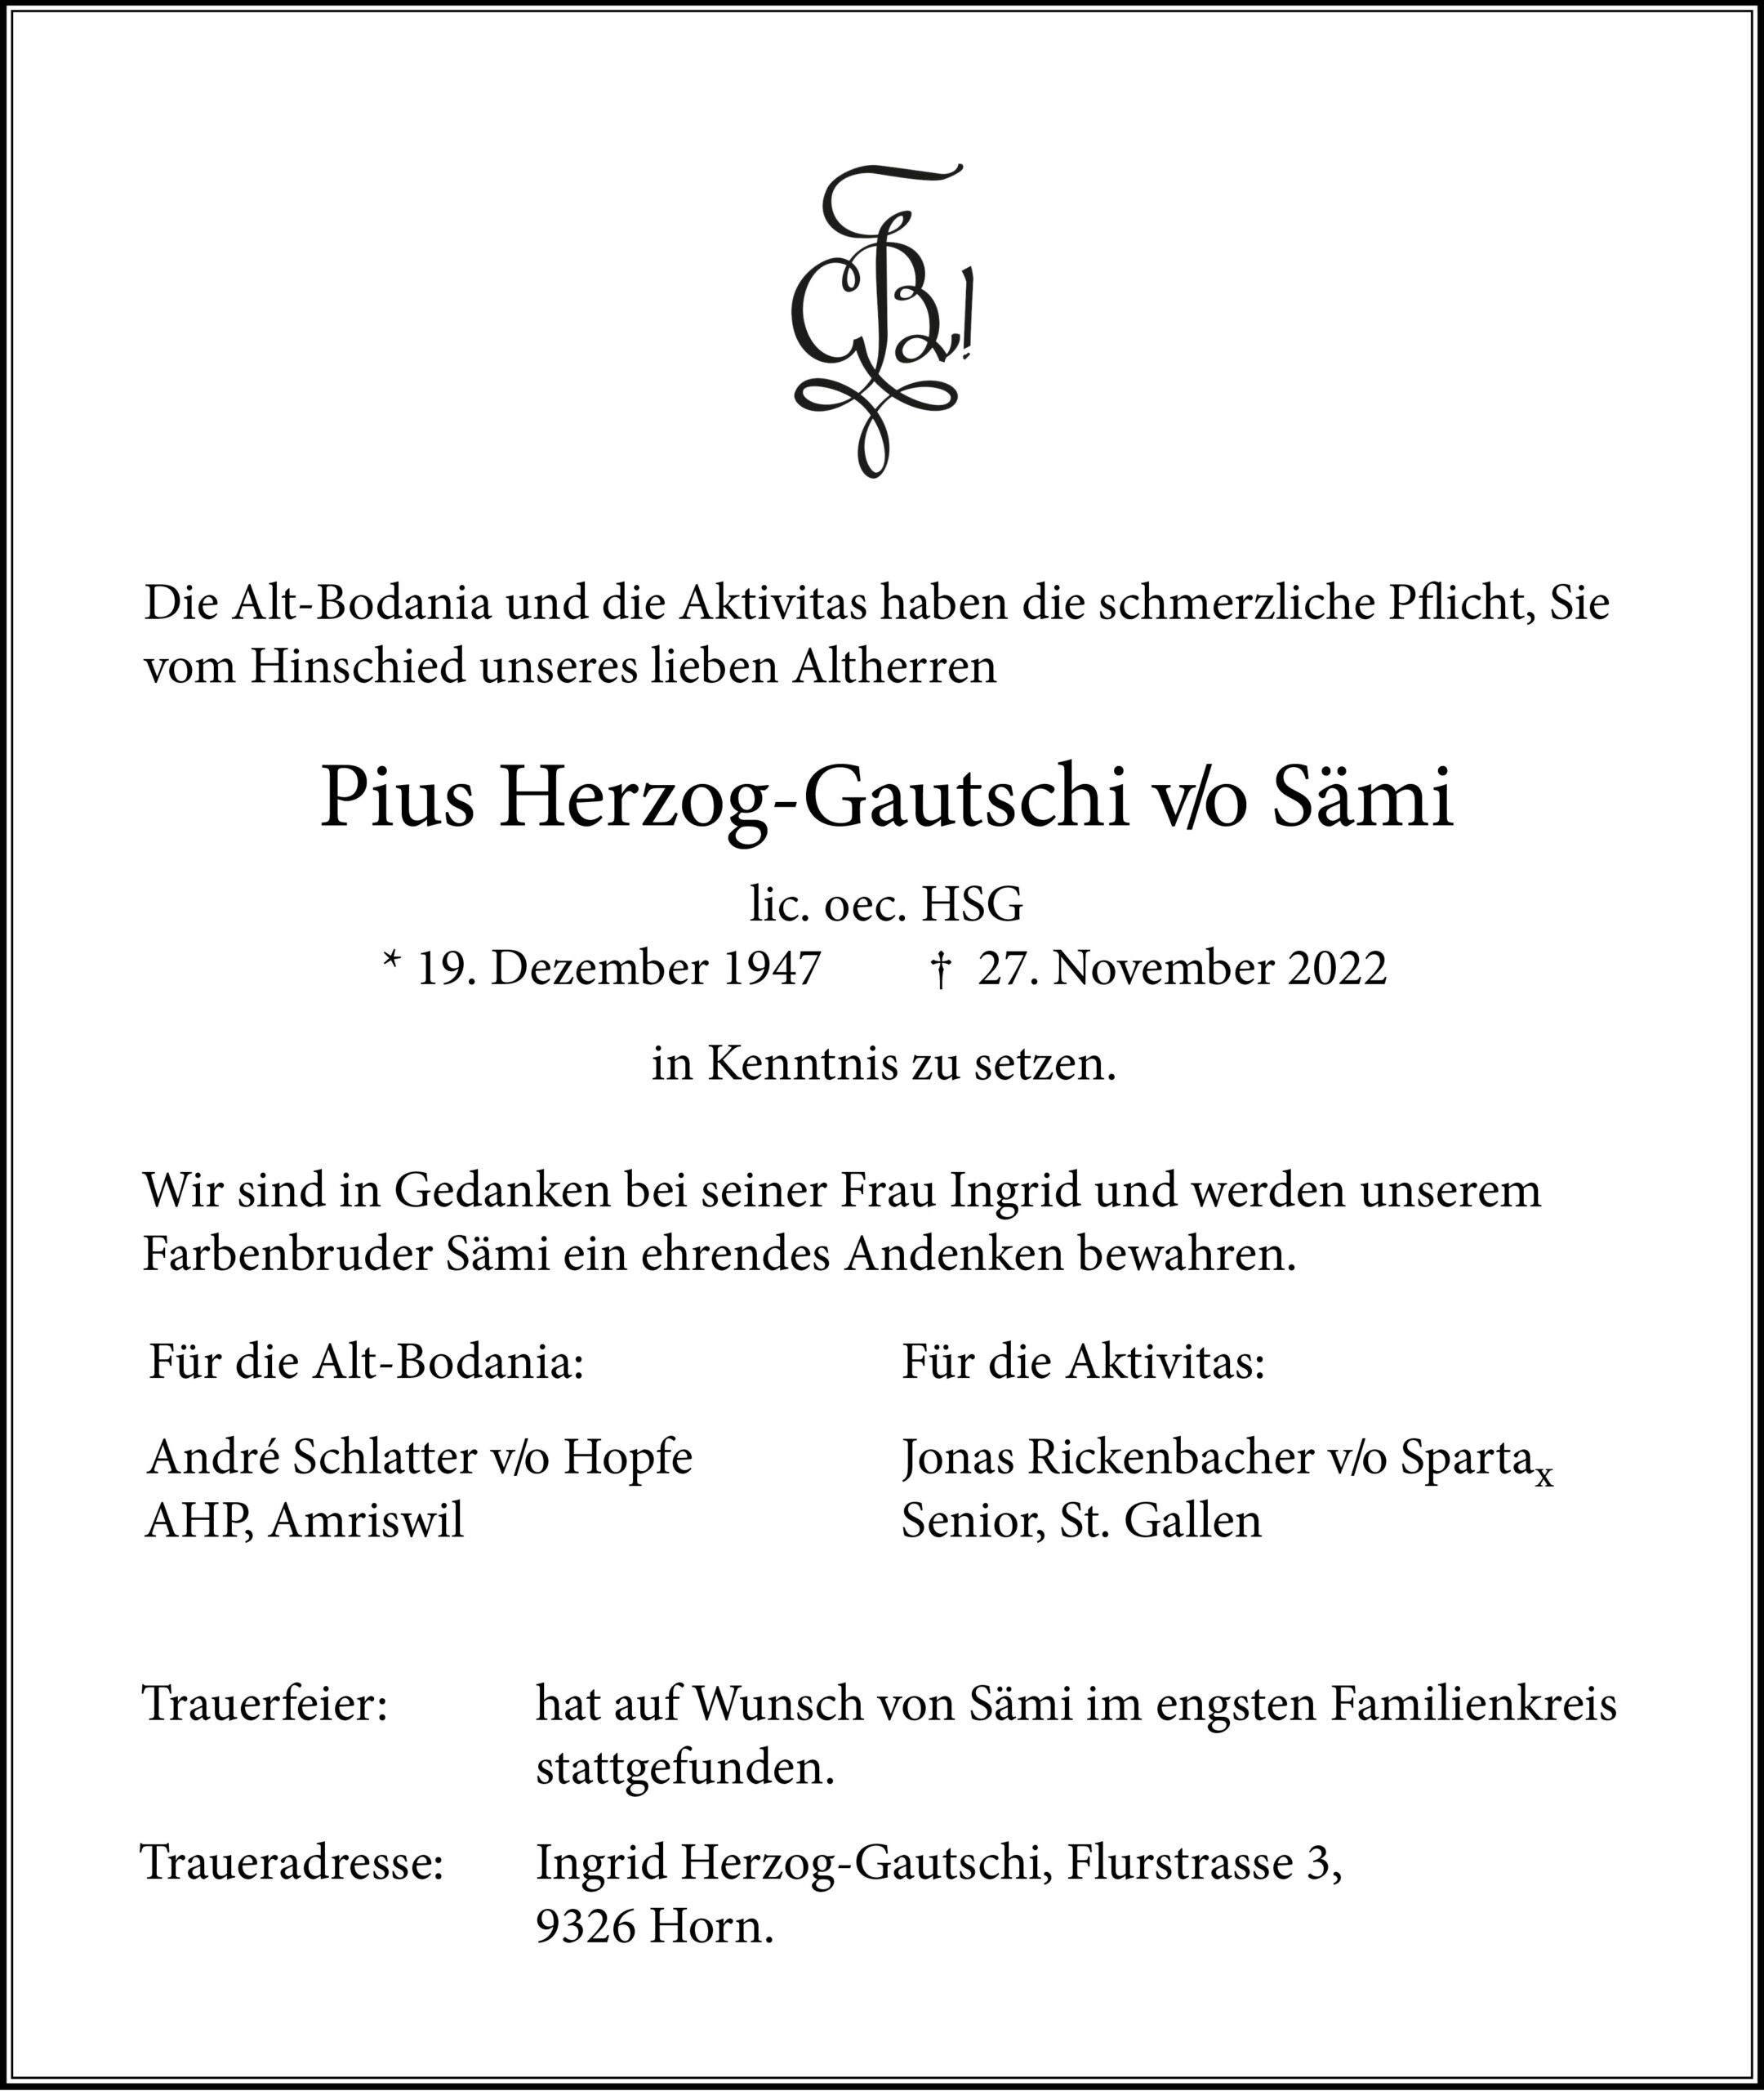 Pius Herzog v/o Sämi †